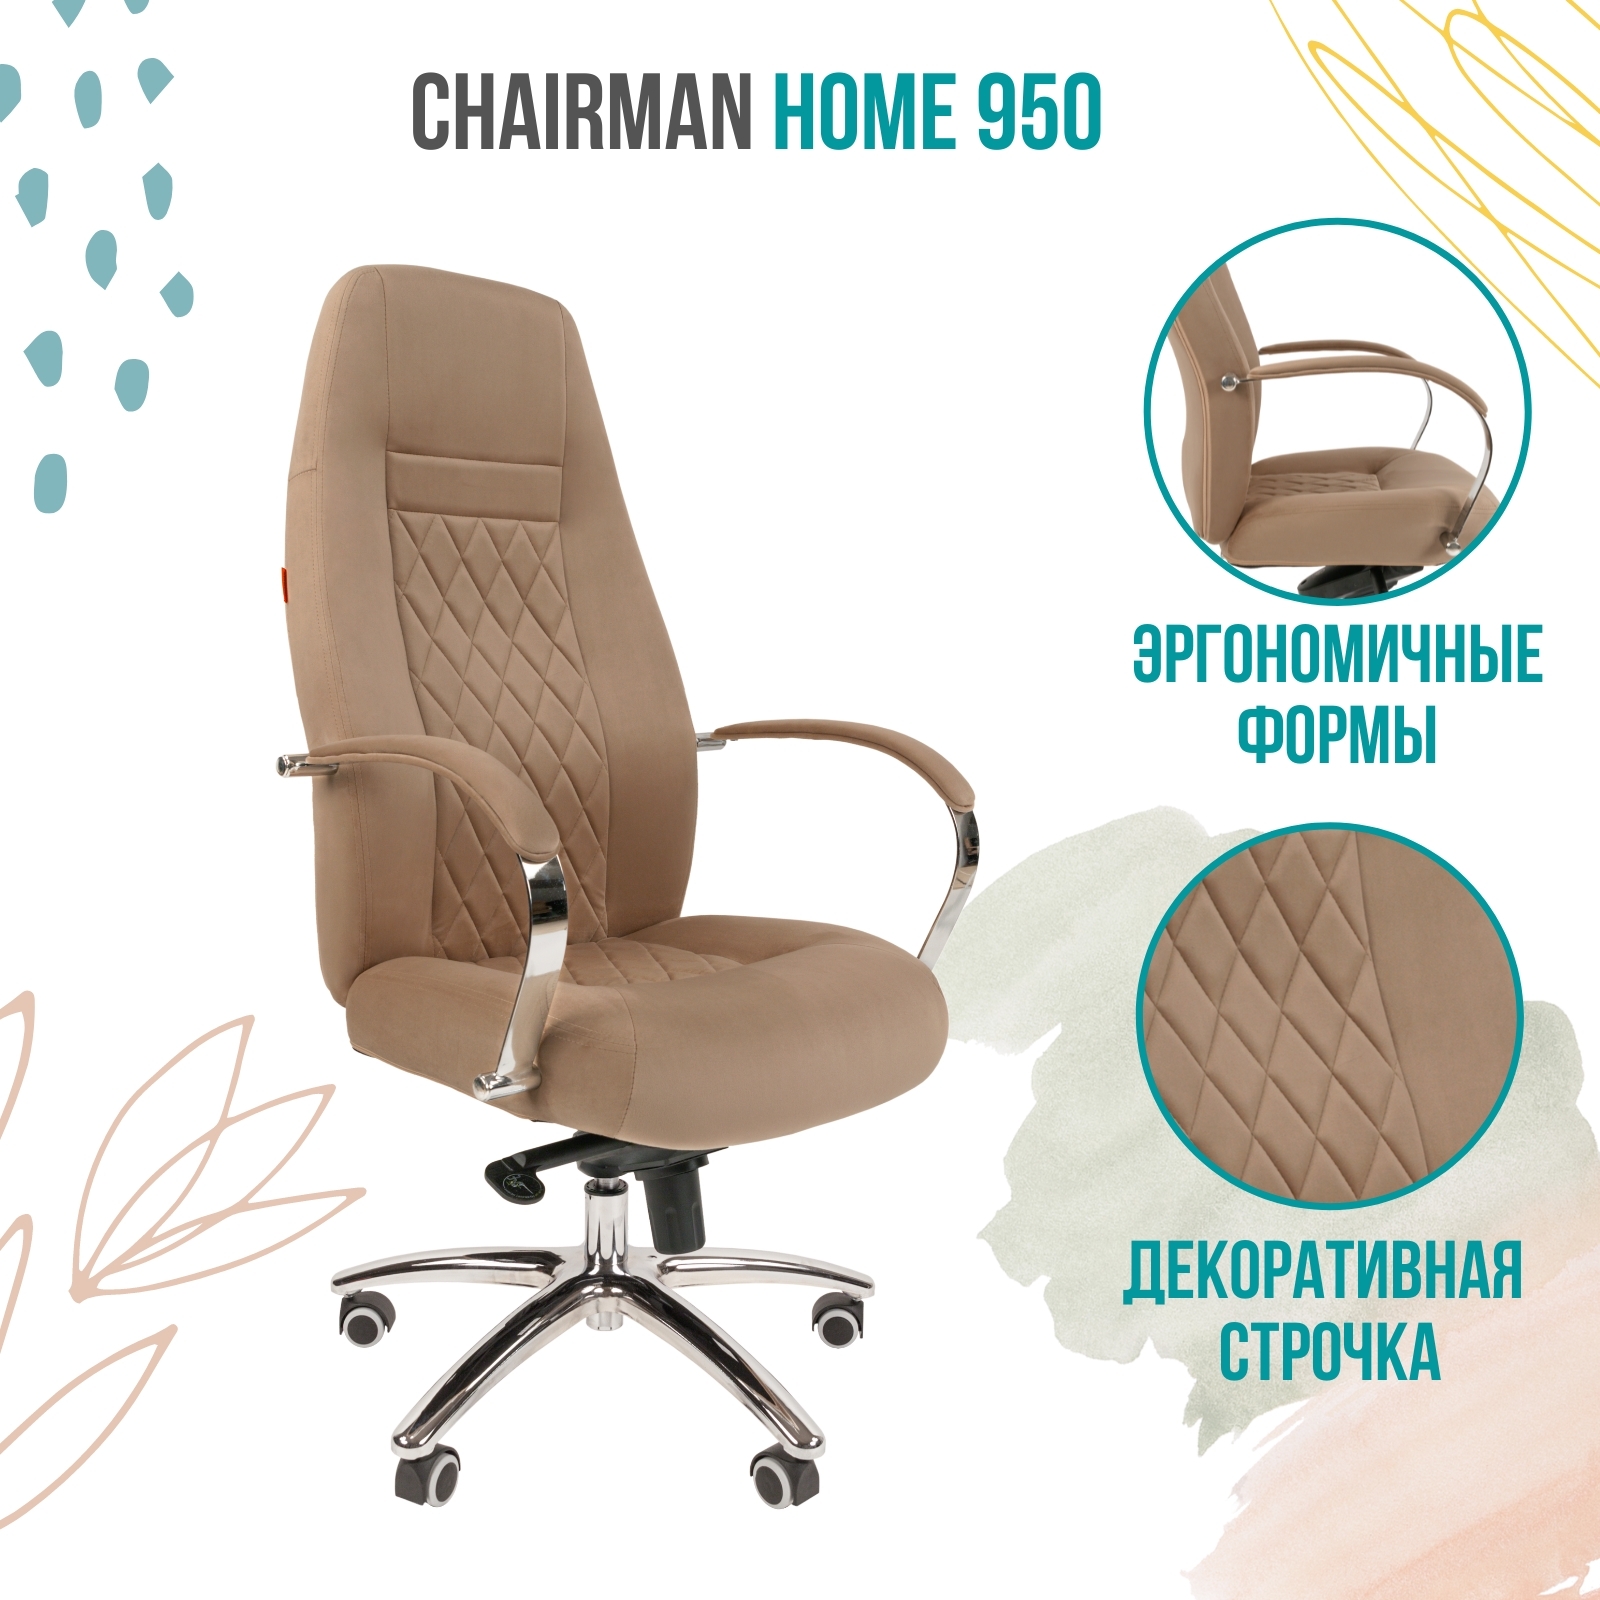 Компьютерное кресло для дома и офиса Chairman Home 950, велюр, бежевый